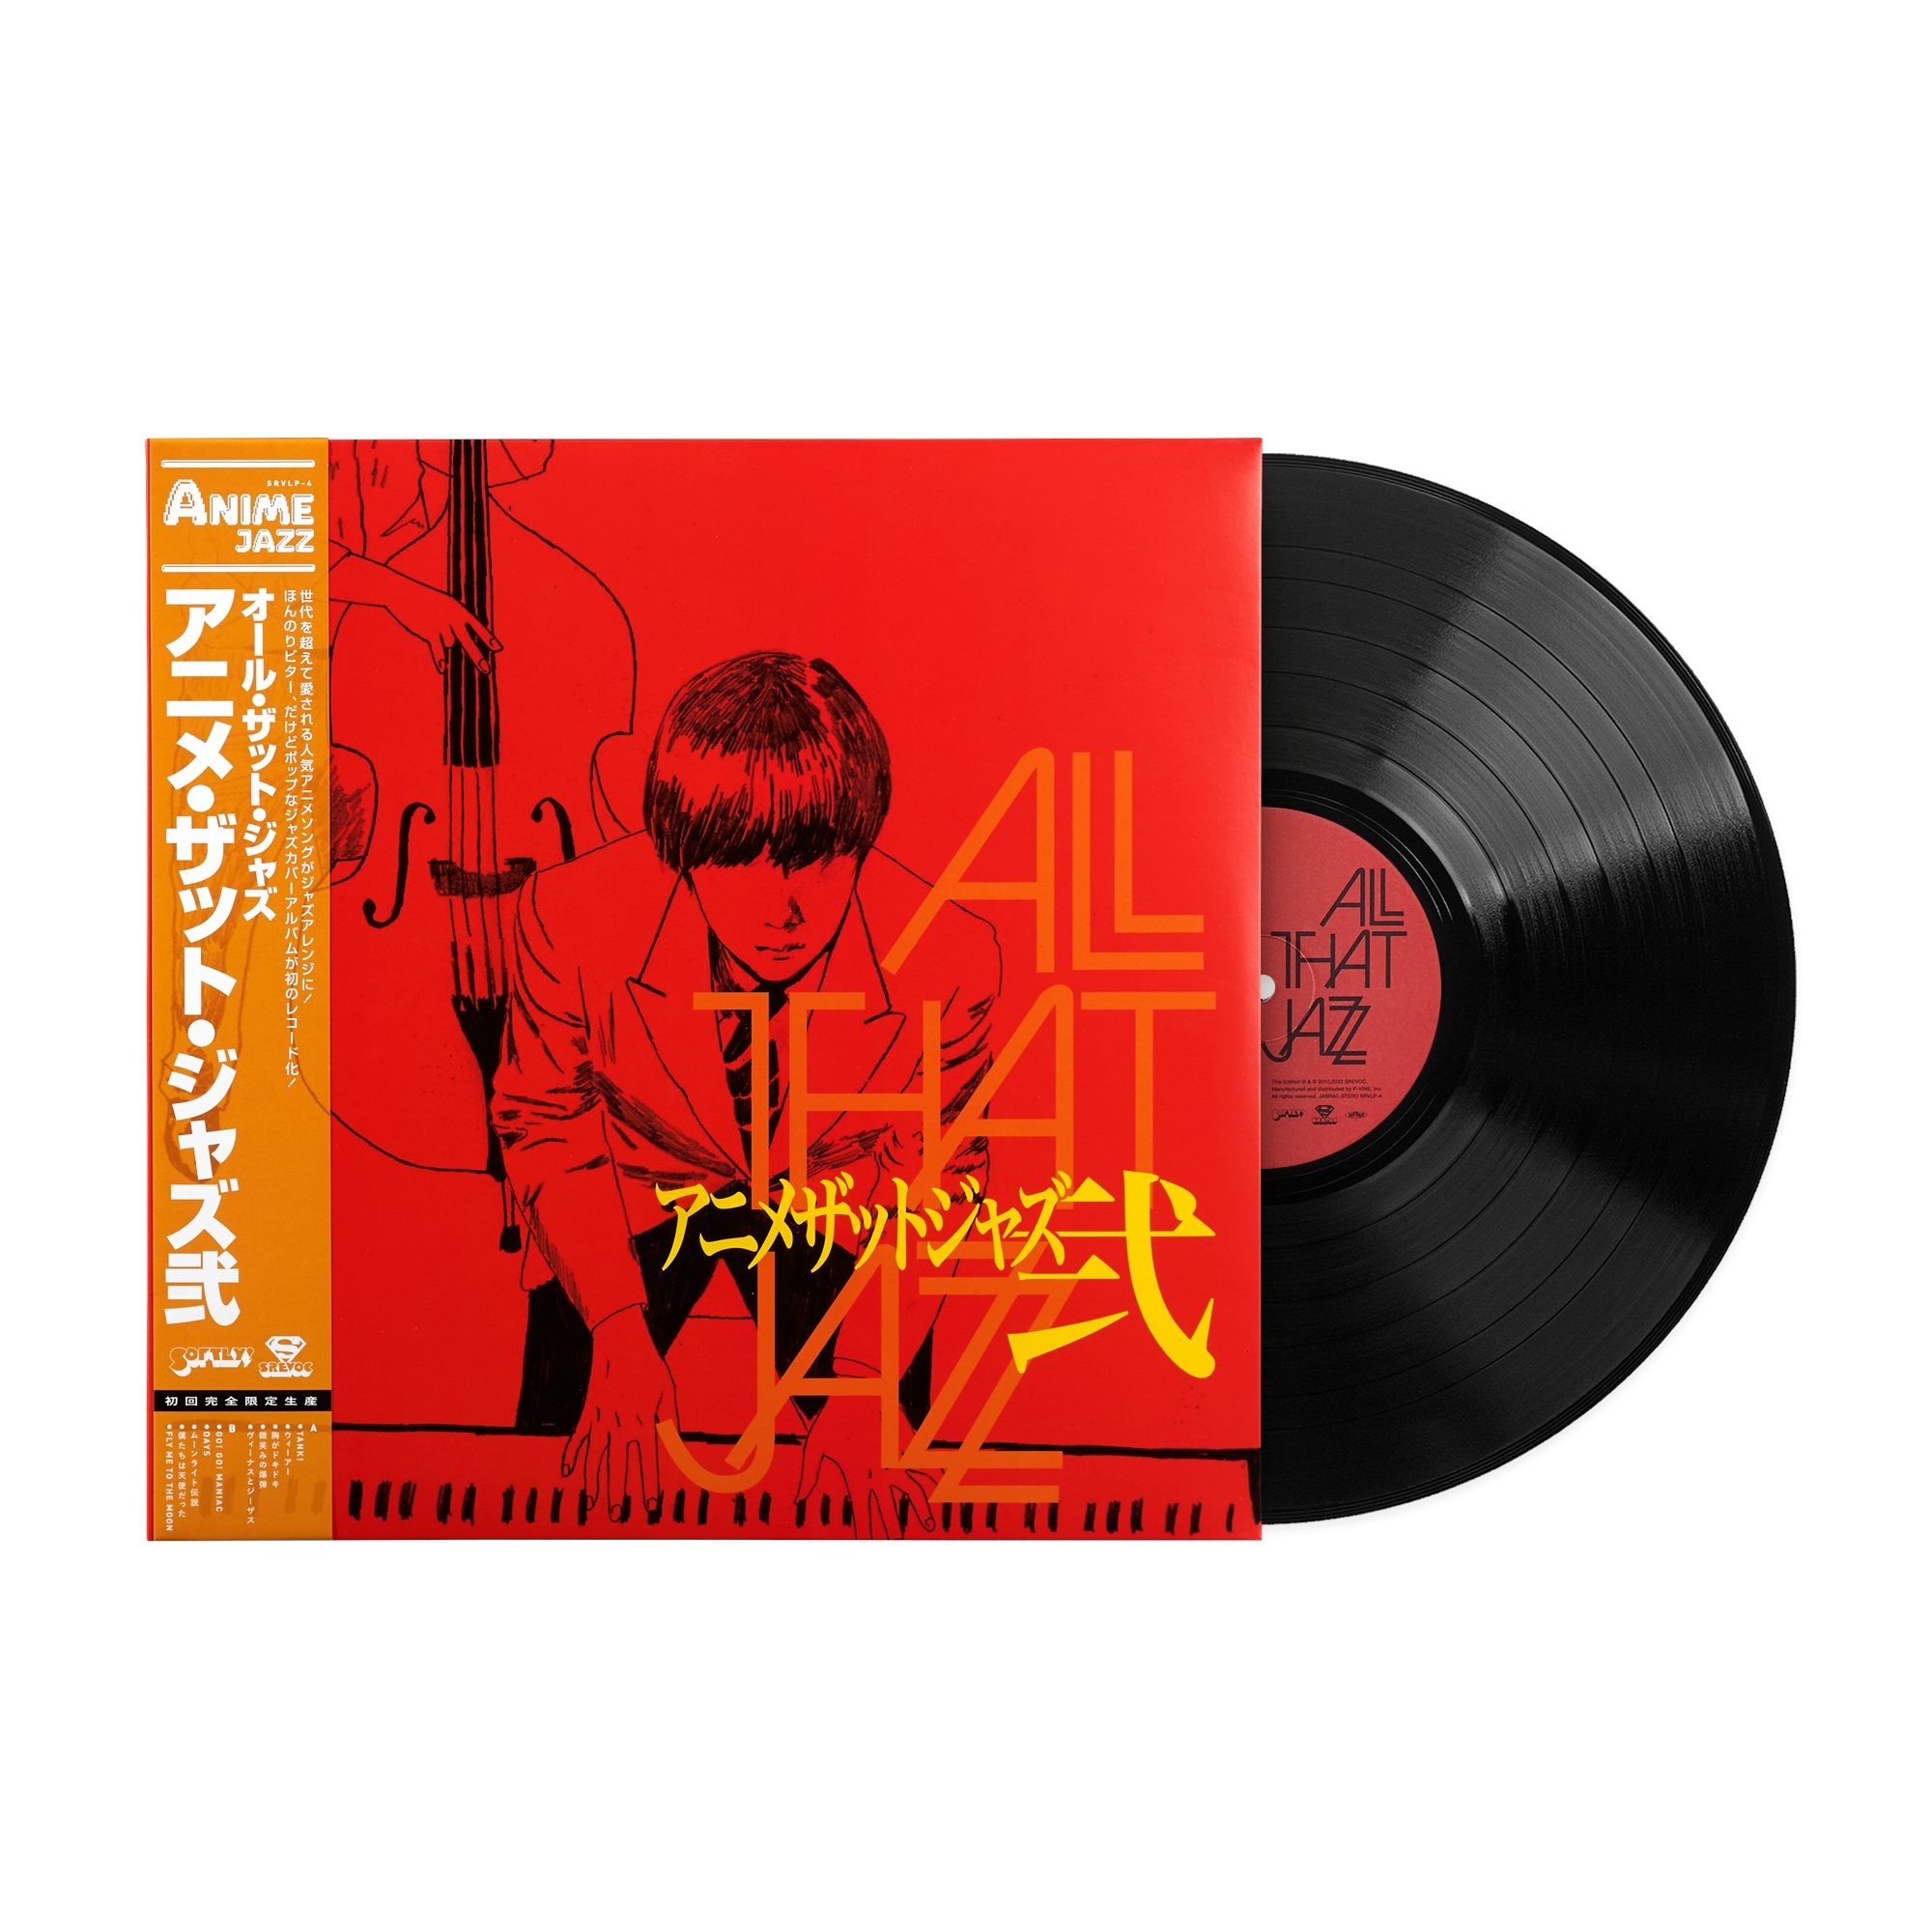 ラスマス・フェイバー・プレゼンツ・プラチナ・ジャズ - Platinum Jazz ~ Anime Standard Vol. 2 ~ -  Amazon.com Music